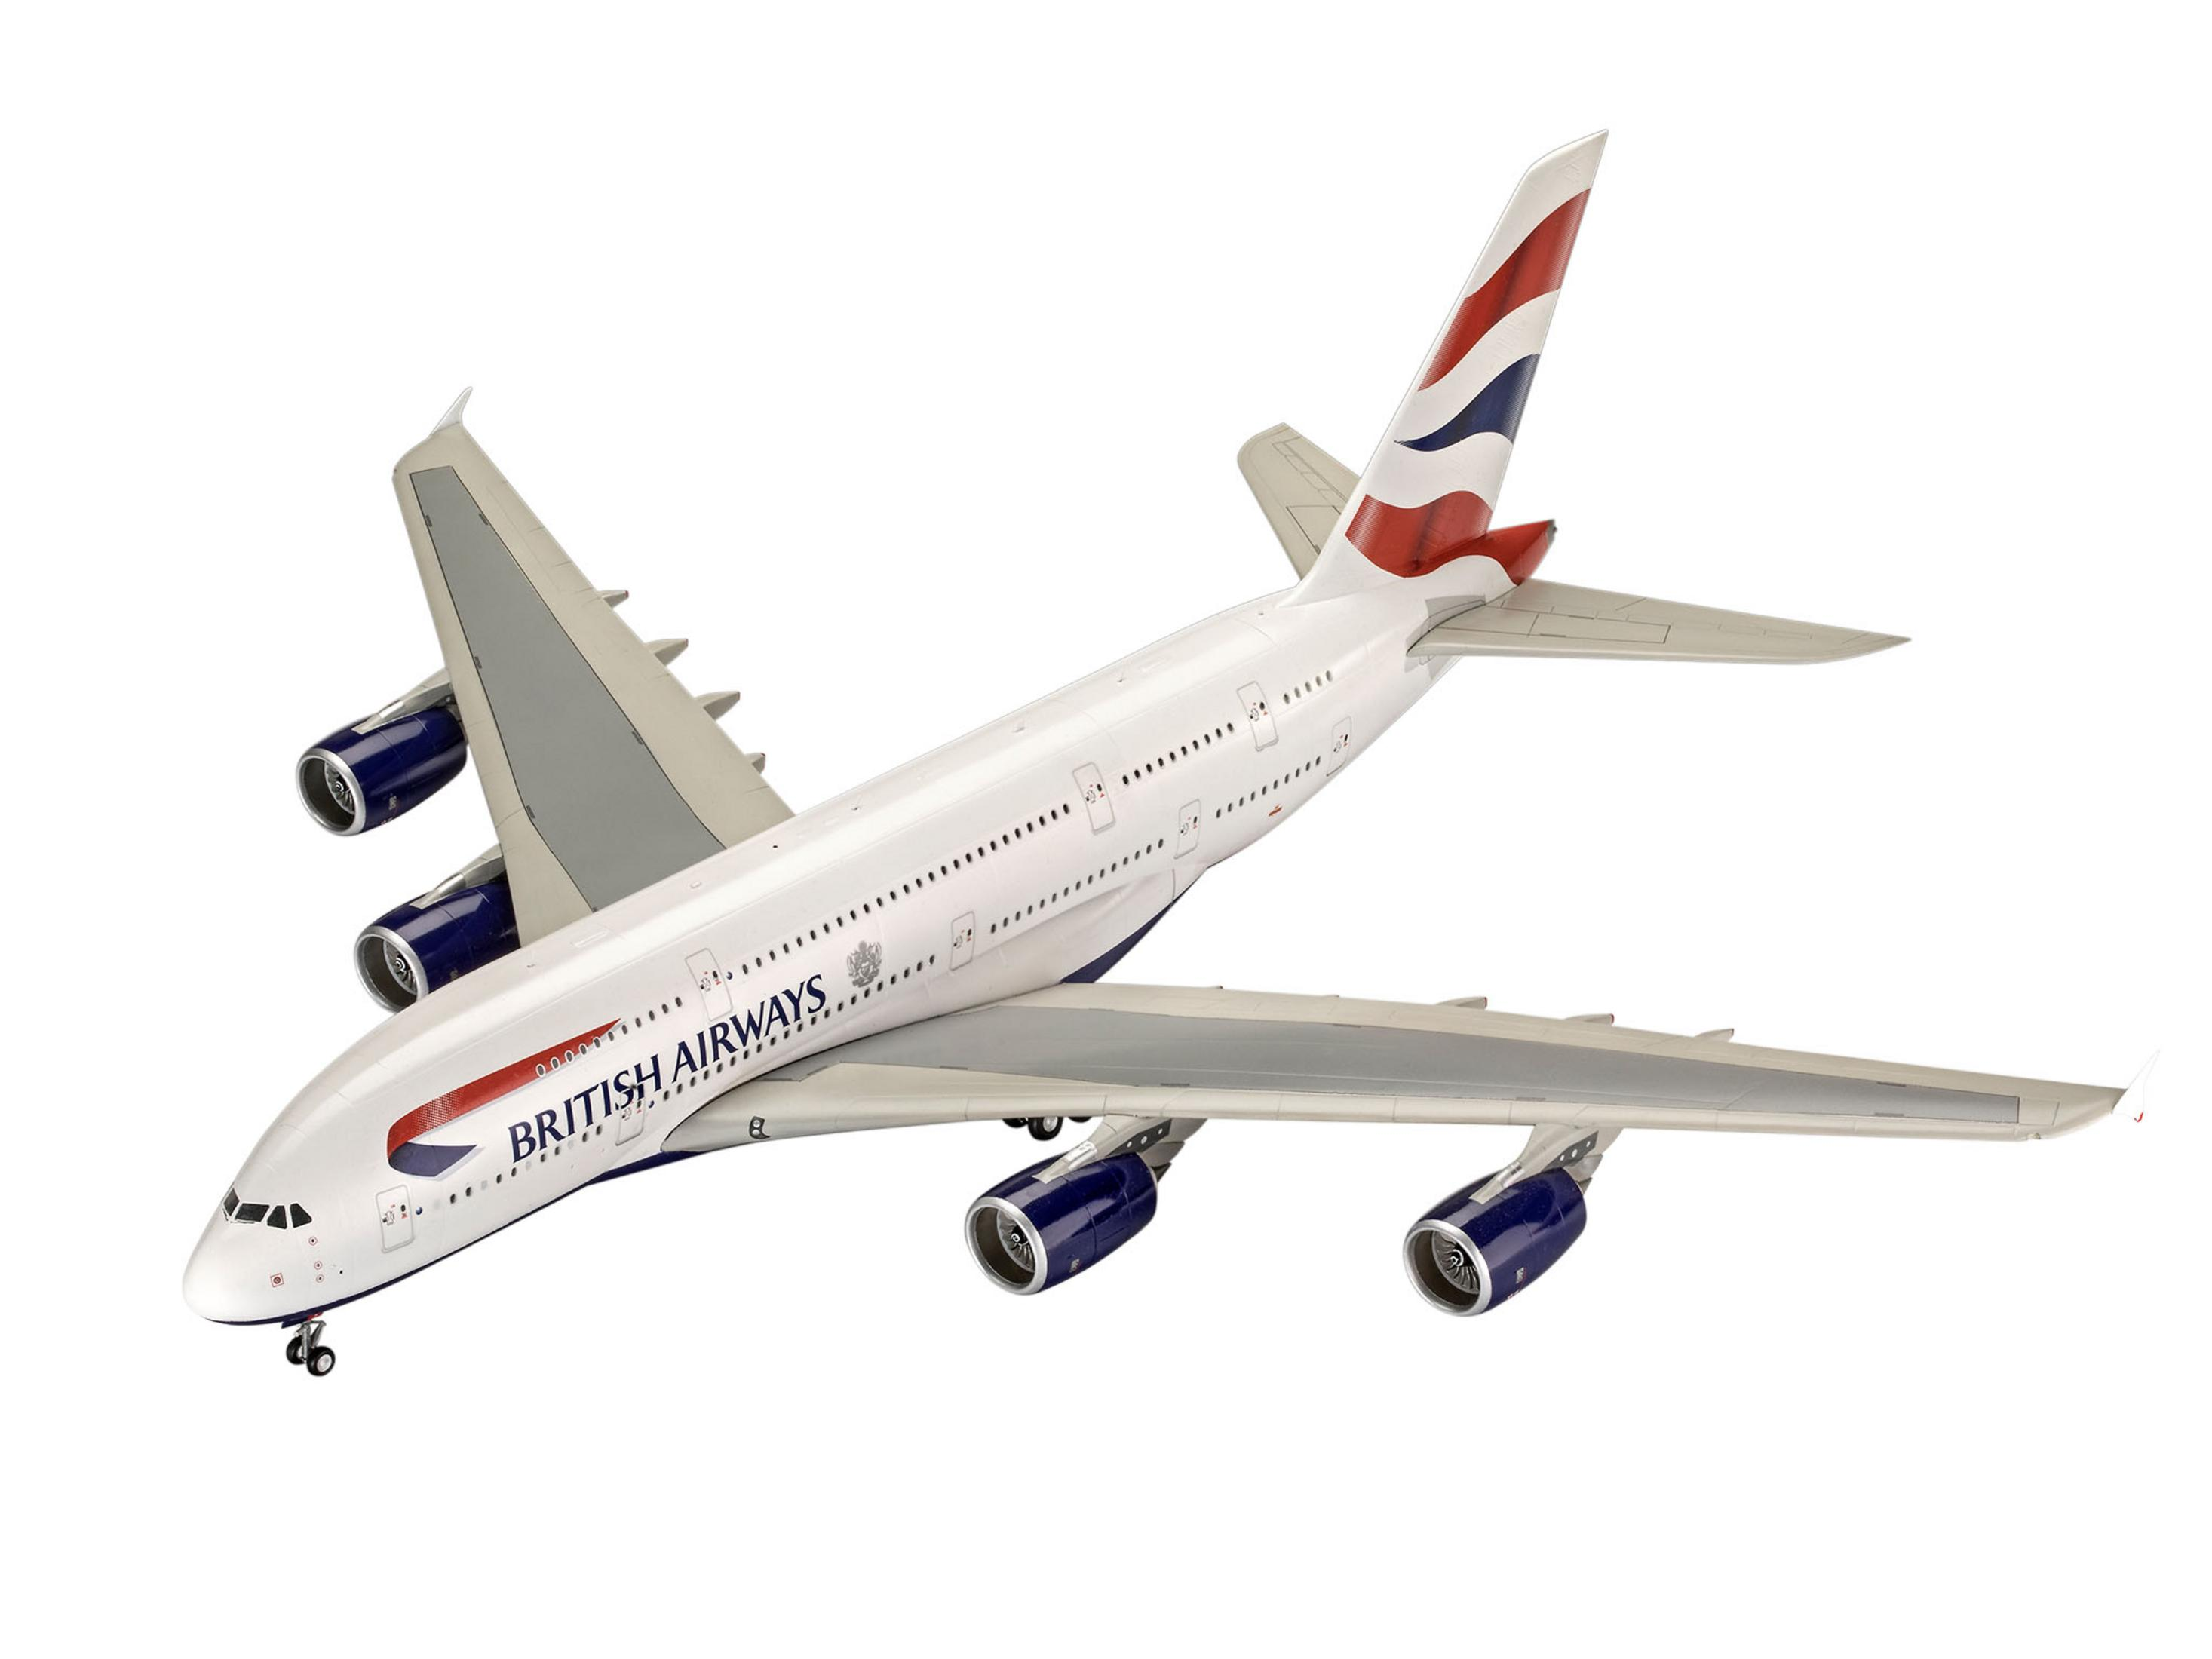 03922 (NUR Modell BRITISH REVELL A380-800 AIRWAYS ONLINE)